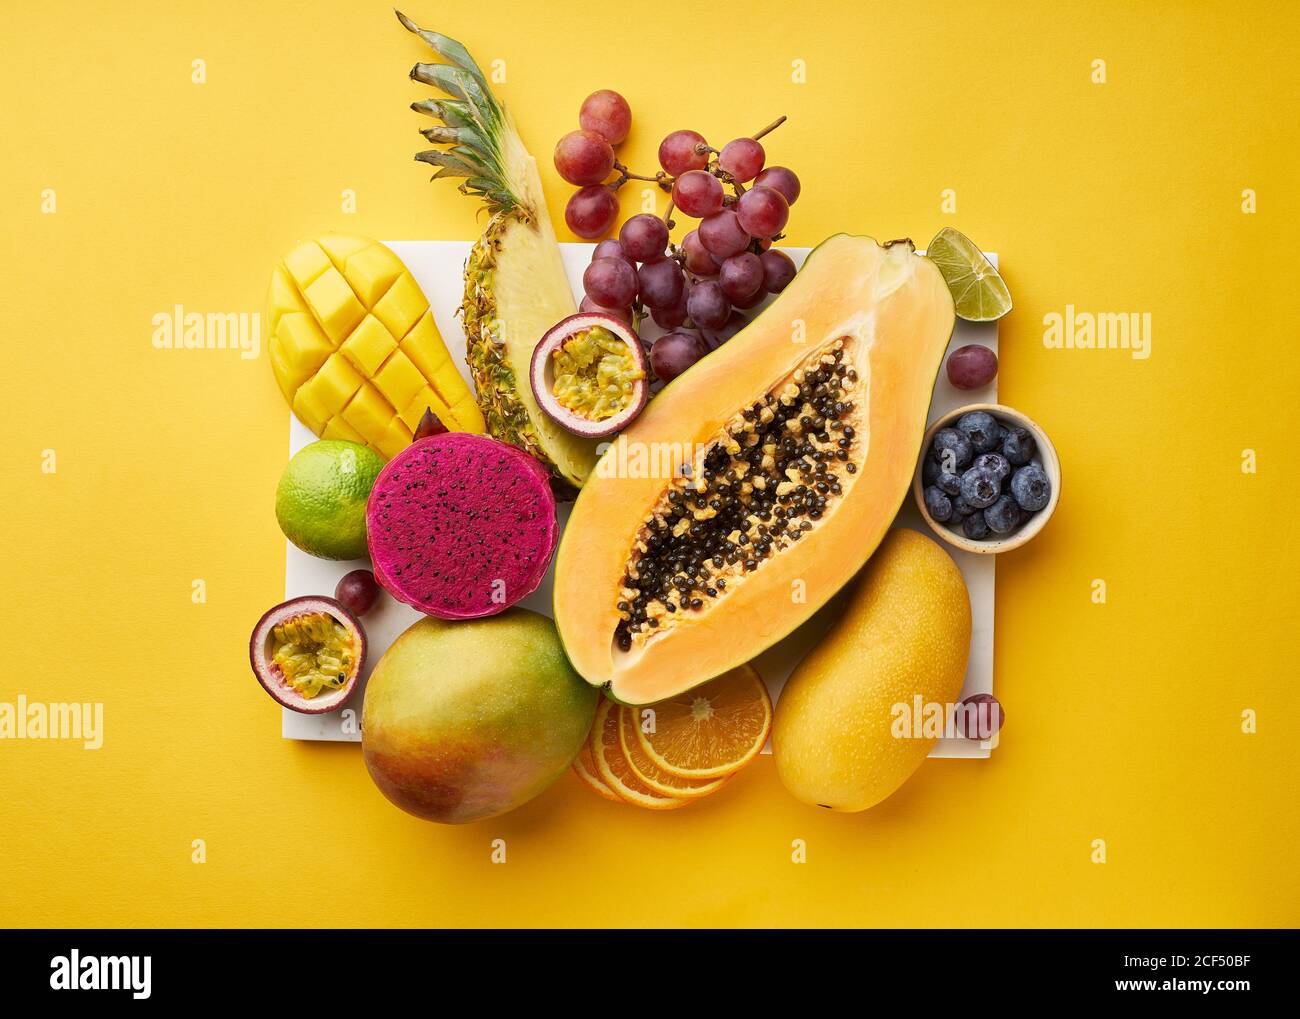 Vista superior de plano con frutas tropicales en una bandeja: Papaya, mango, fruta de dragón y piña sobre fondo amarillo. Lujo de verano Foto de stock